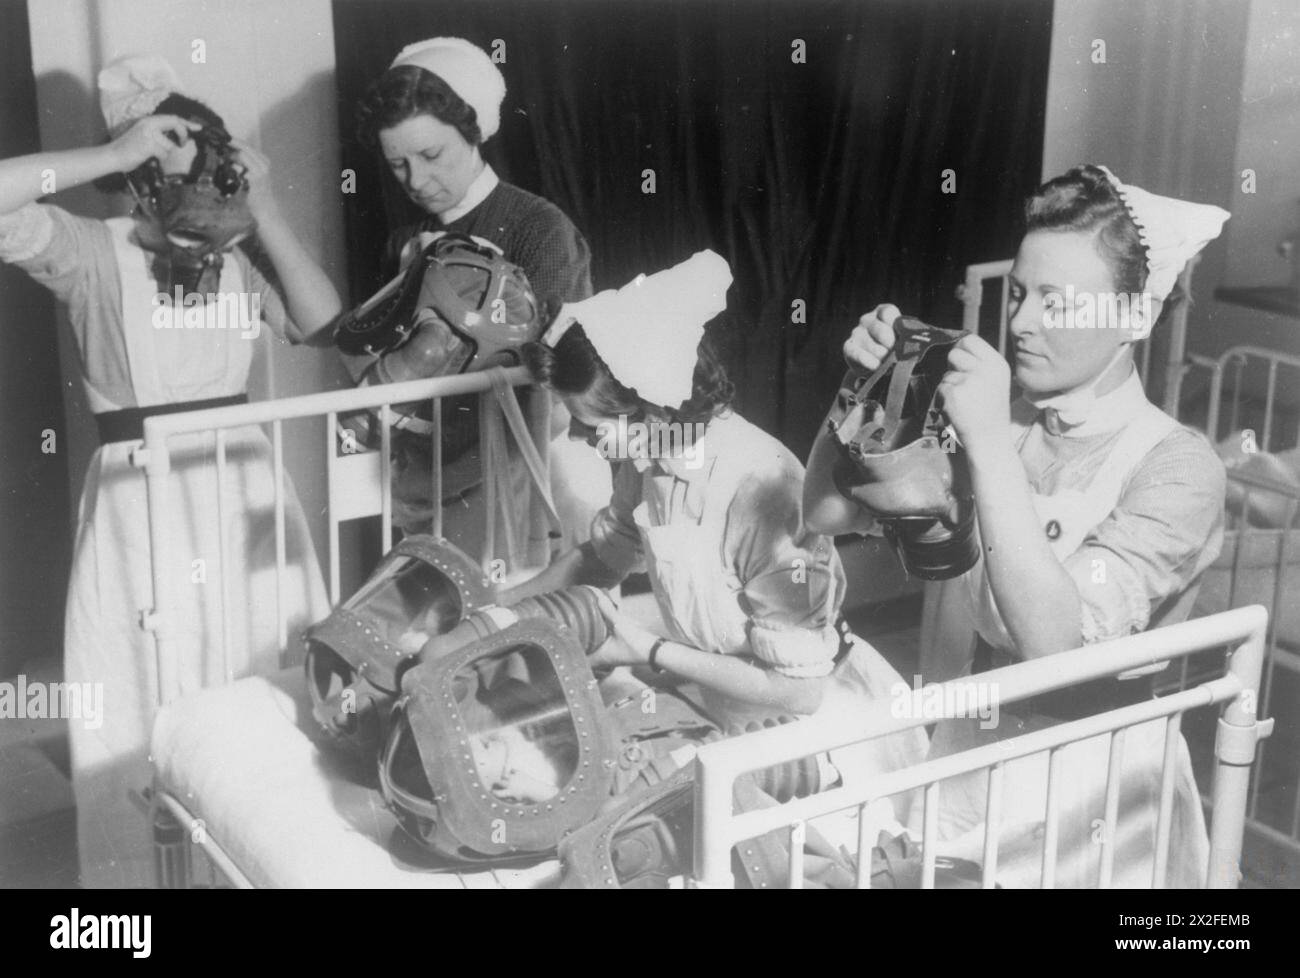 GASBOHRUNG IN Einem LONDONER KRANKENHAUS: GASMASKEN FÜR BABYS WERDEN GETESTET, ENGLAND, 1940 - drei Krankenschwestern setzen ihre Gasmasken auf, während eine vierte Krankenschwester die Gasmasken von zwei Babys in der Babywanne vor ihr betreut. Erwachsene wurden aufgefordert, ihre eigene Gasmaske anzuziehen, bevor sie Kindern oder anderen Erwachsenen helfen Stockfoto